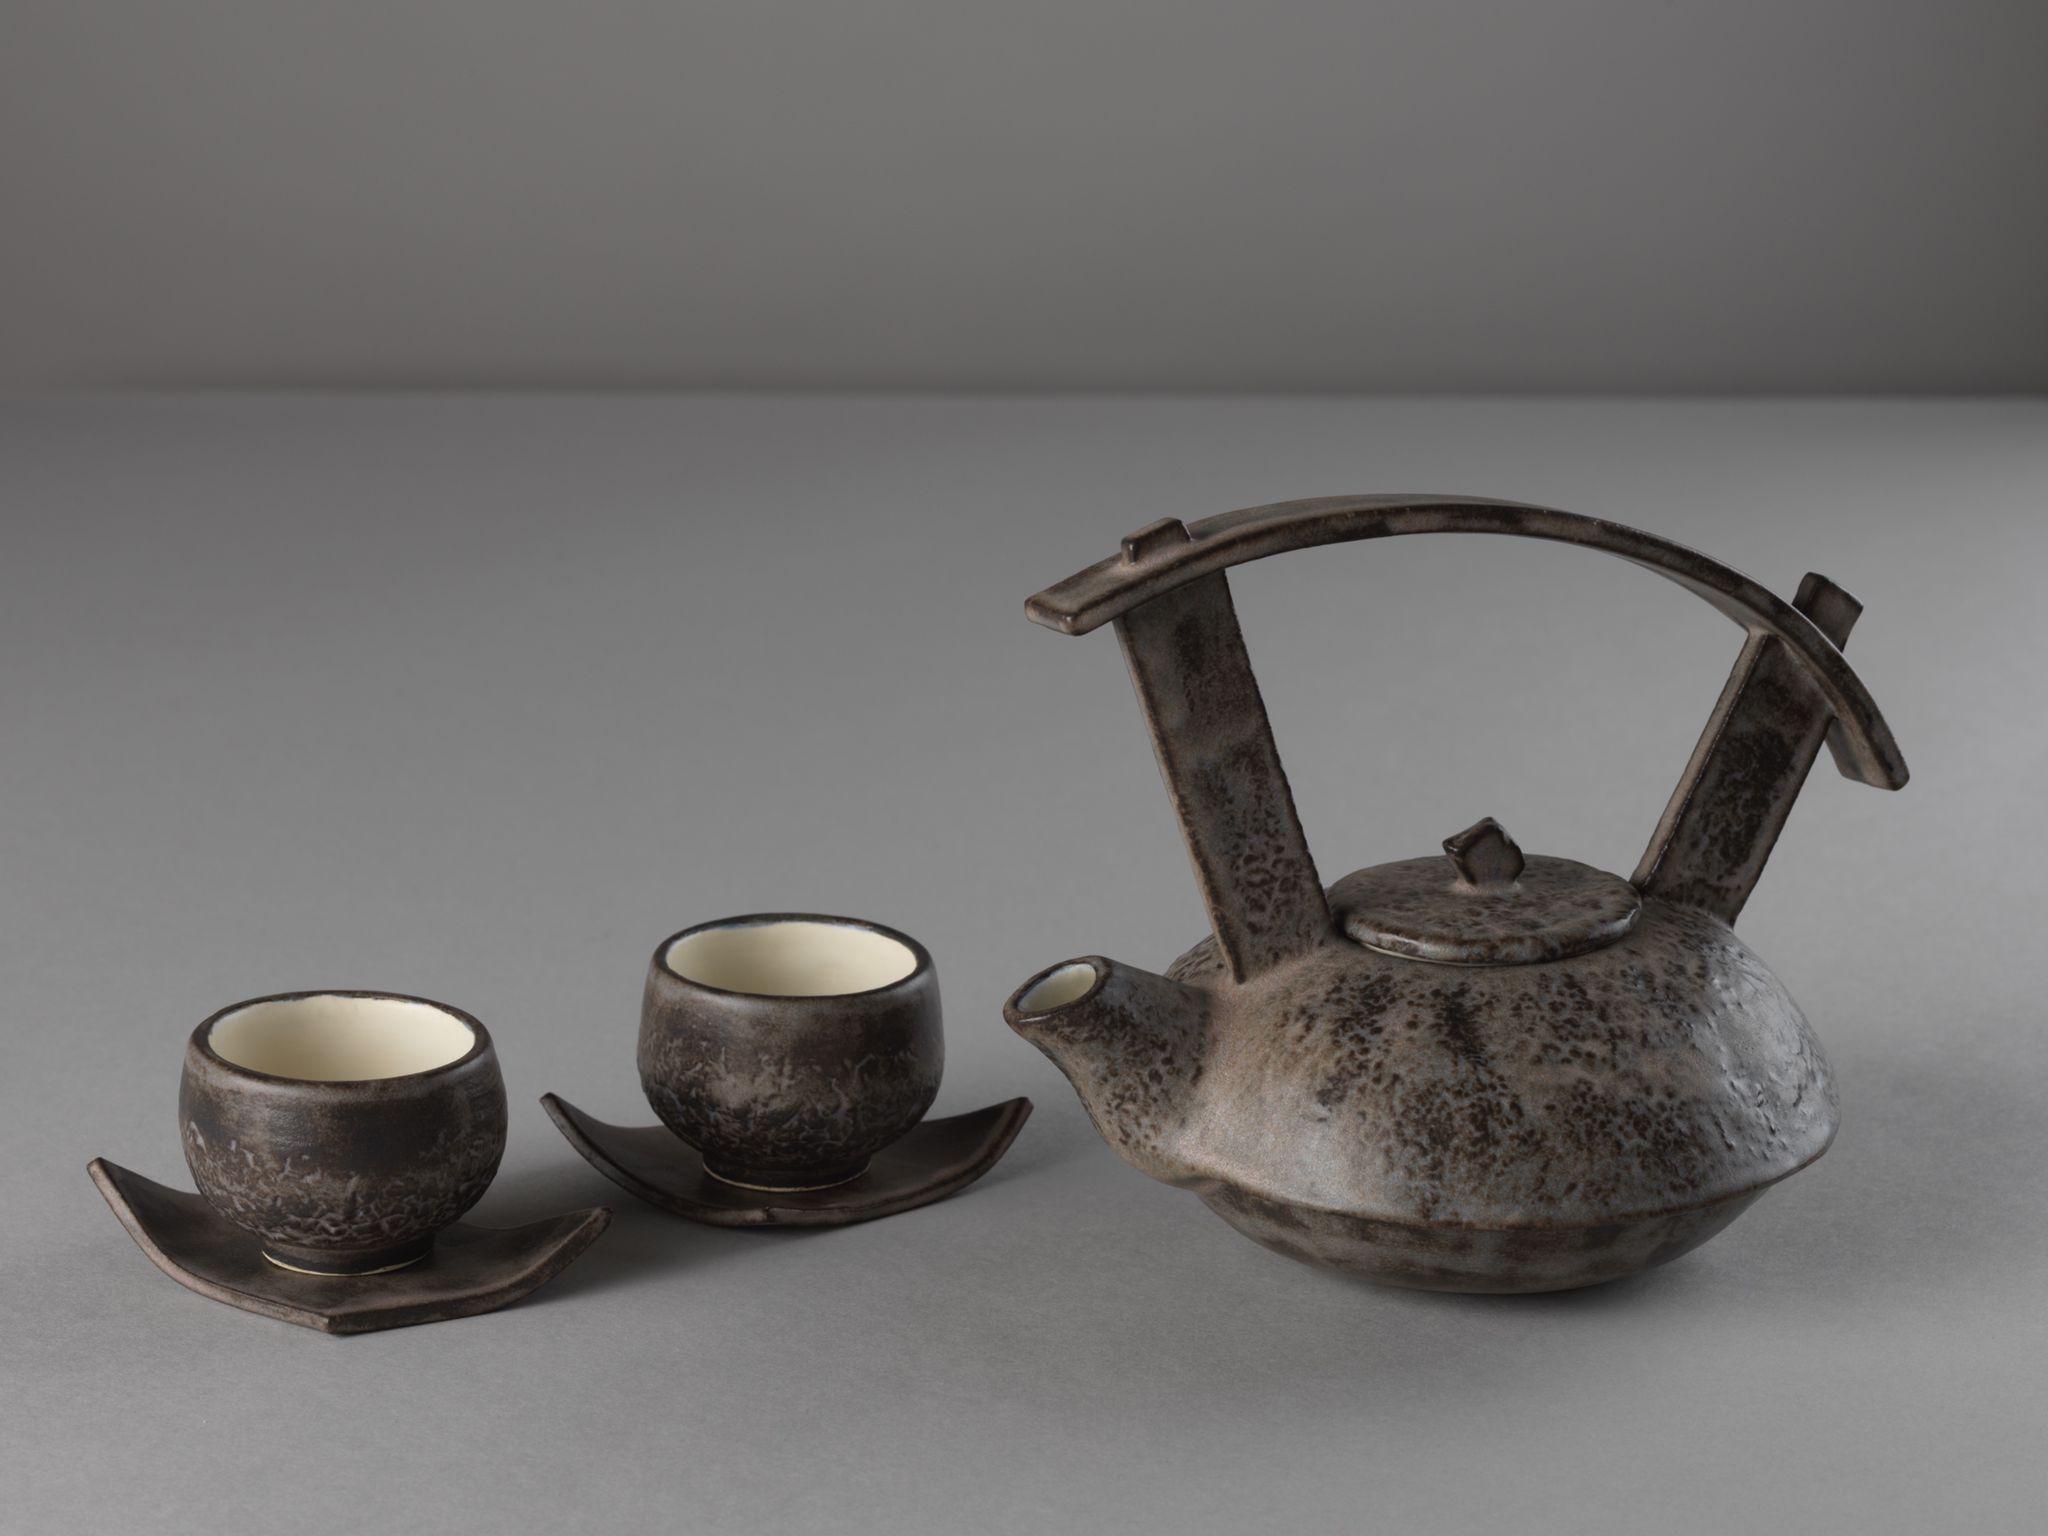 茶具文物馆现正举行「陶瓷茶具创作展览2021」。图示学生组亚军得主黎昕橦的作品《磨练》。